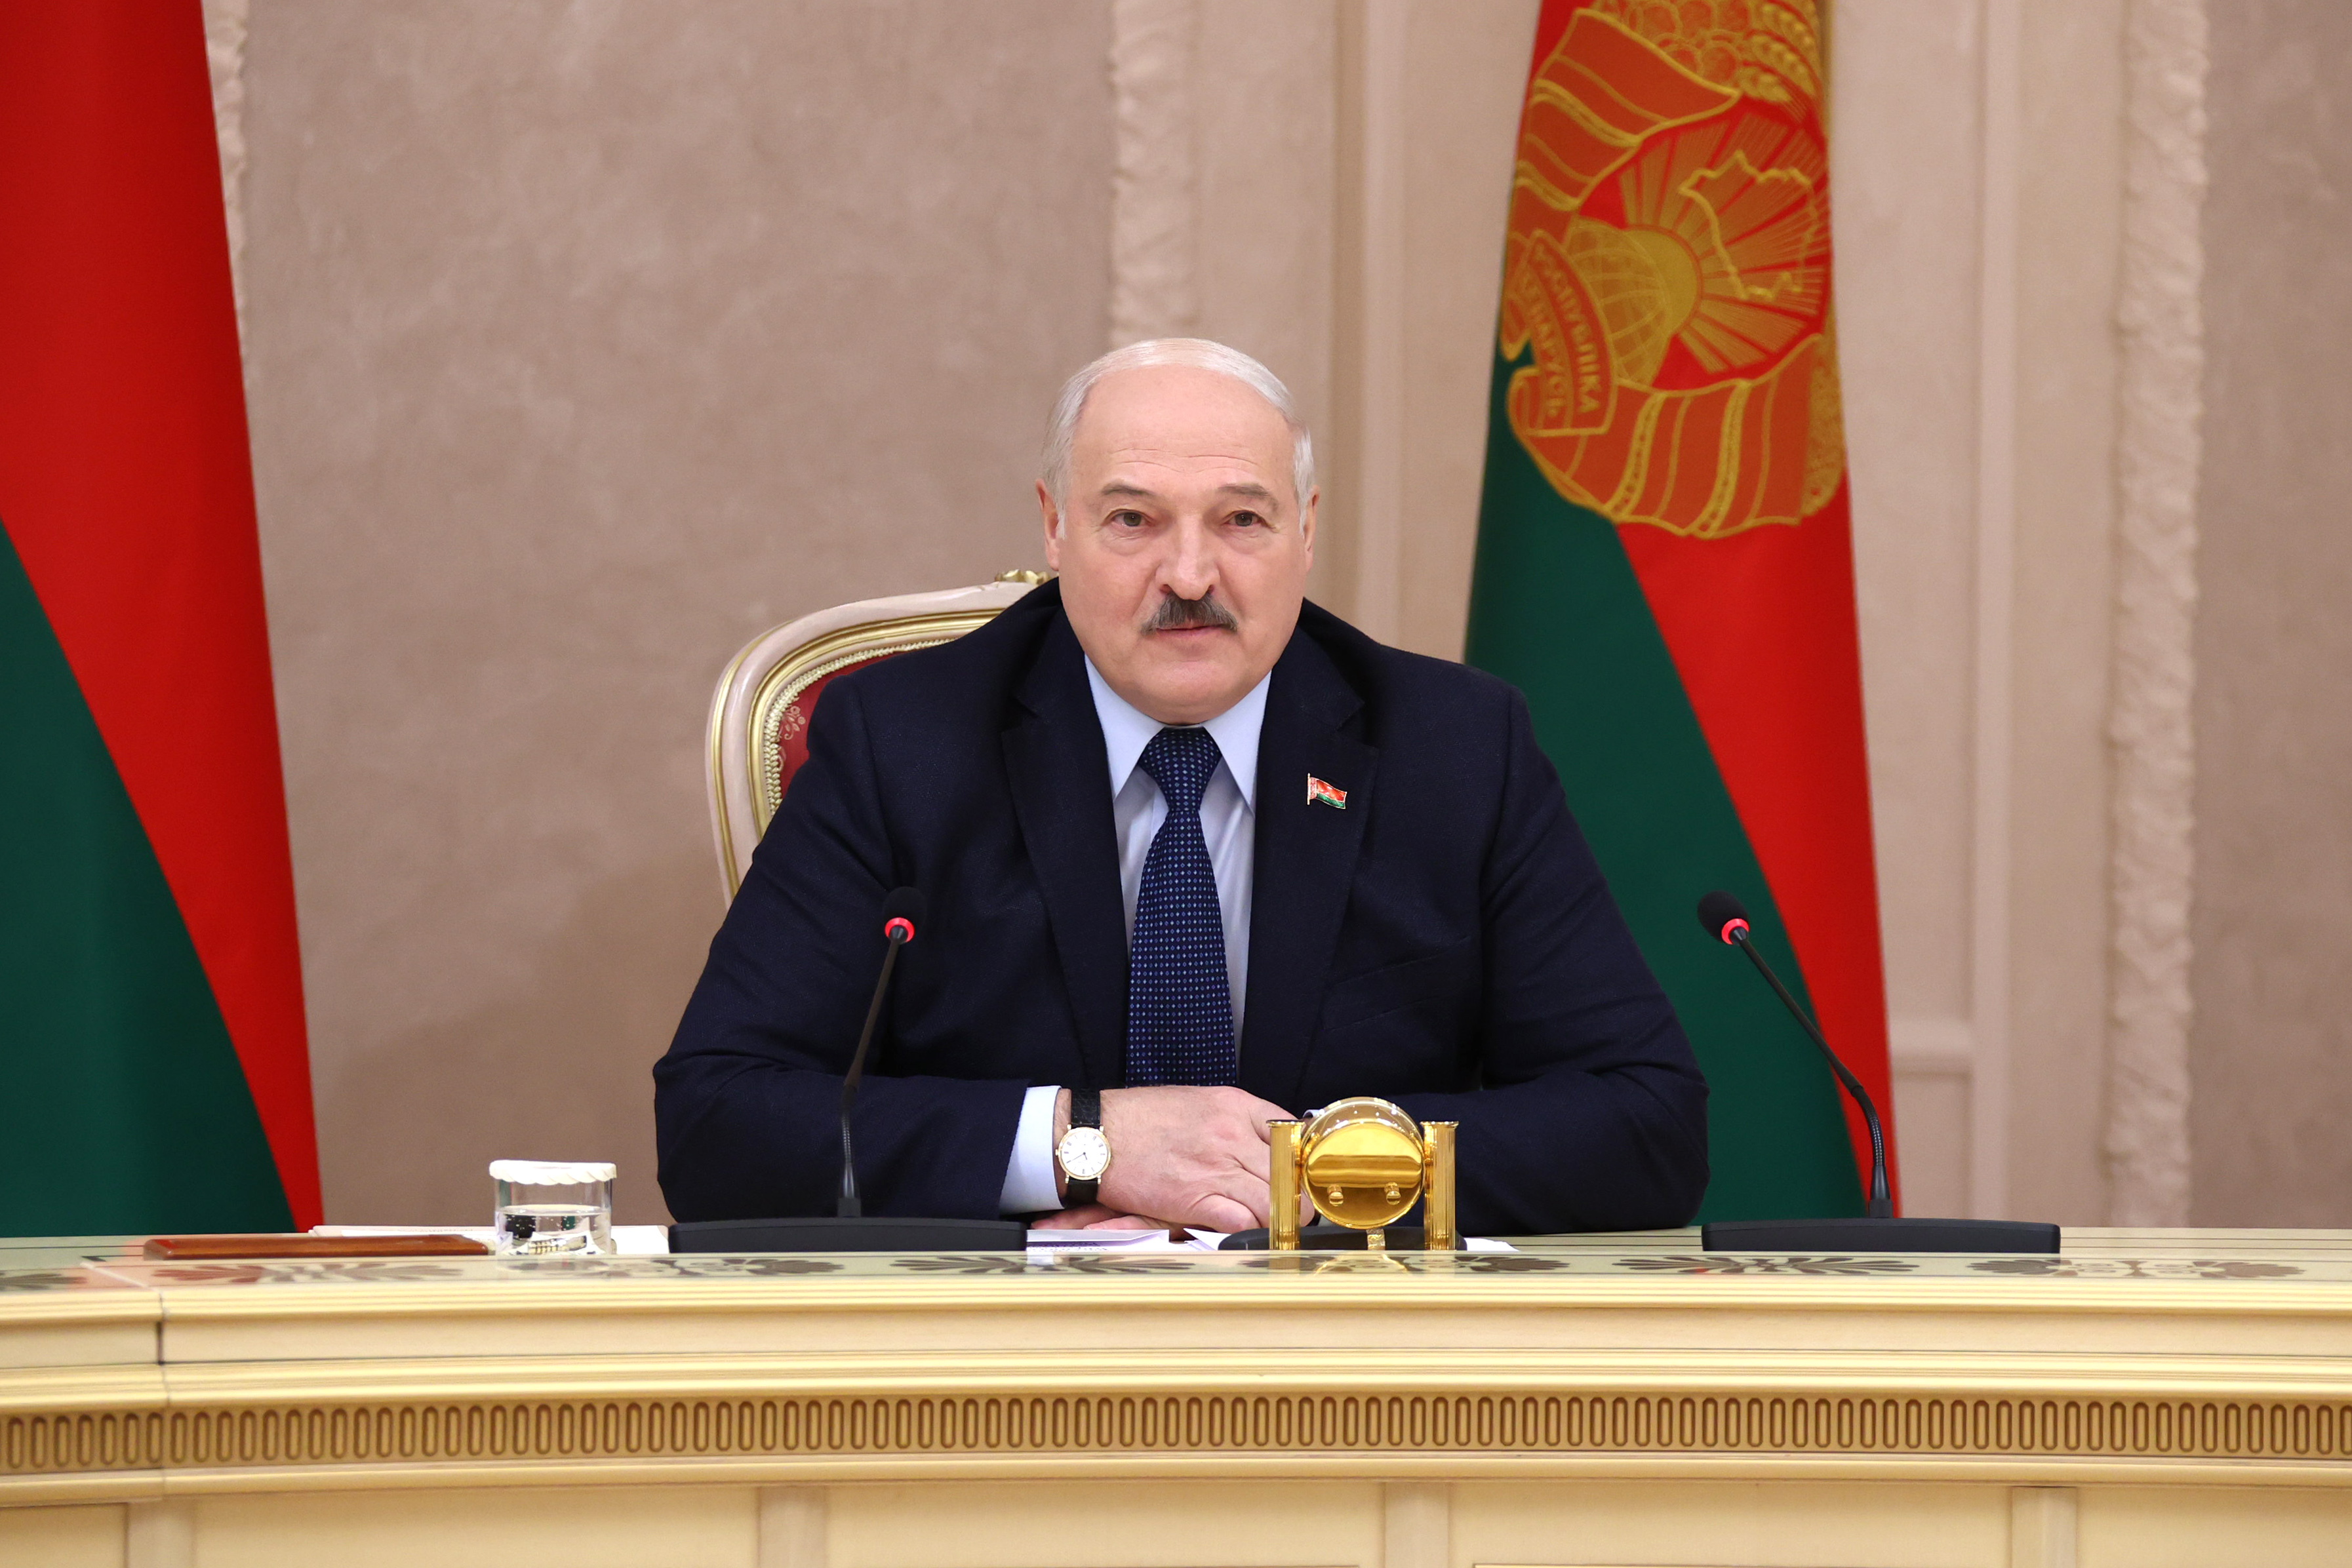 Александр Лукашенко: Россия и Беларусь выстоят перед натиском со стороны Запада  не только в военном отношении, но и в экономическом